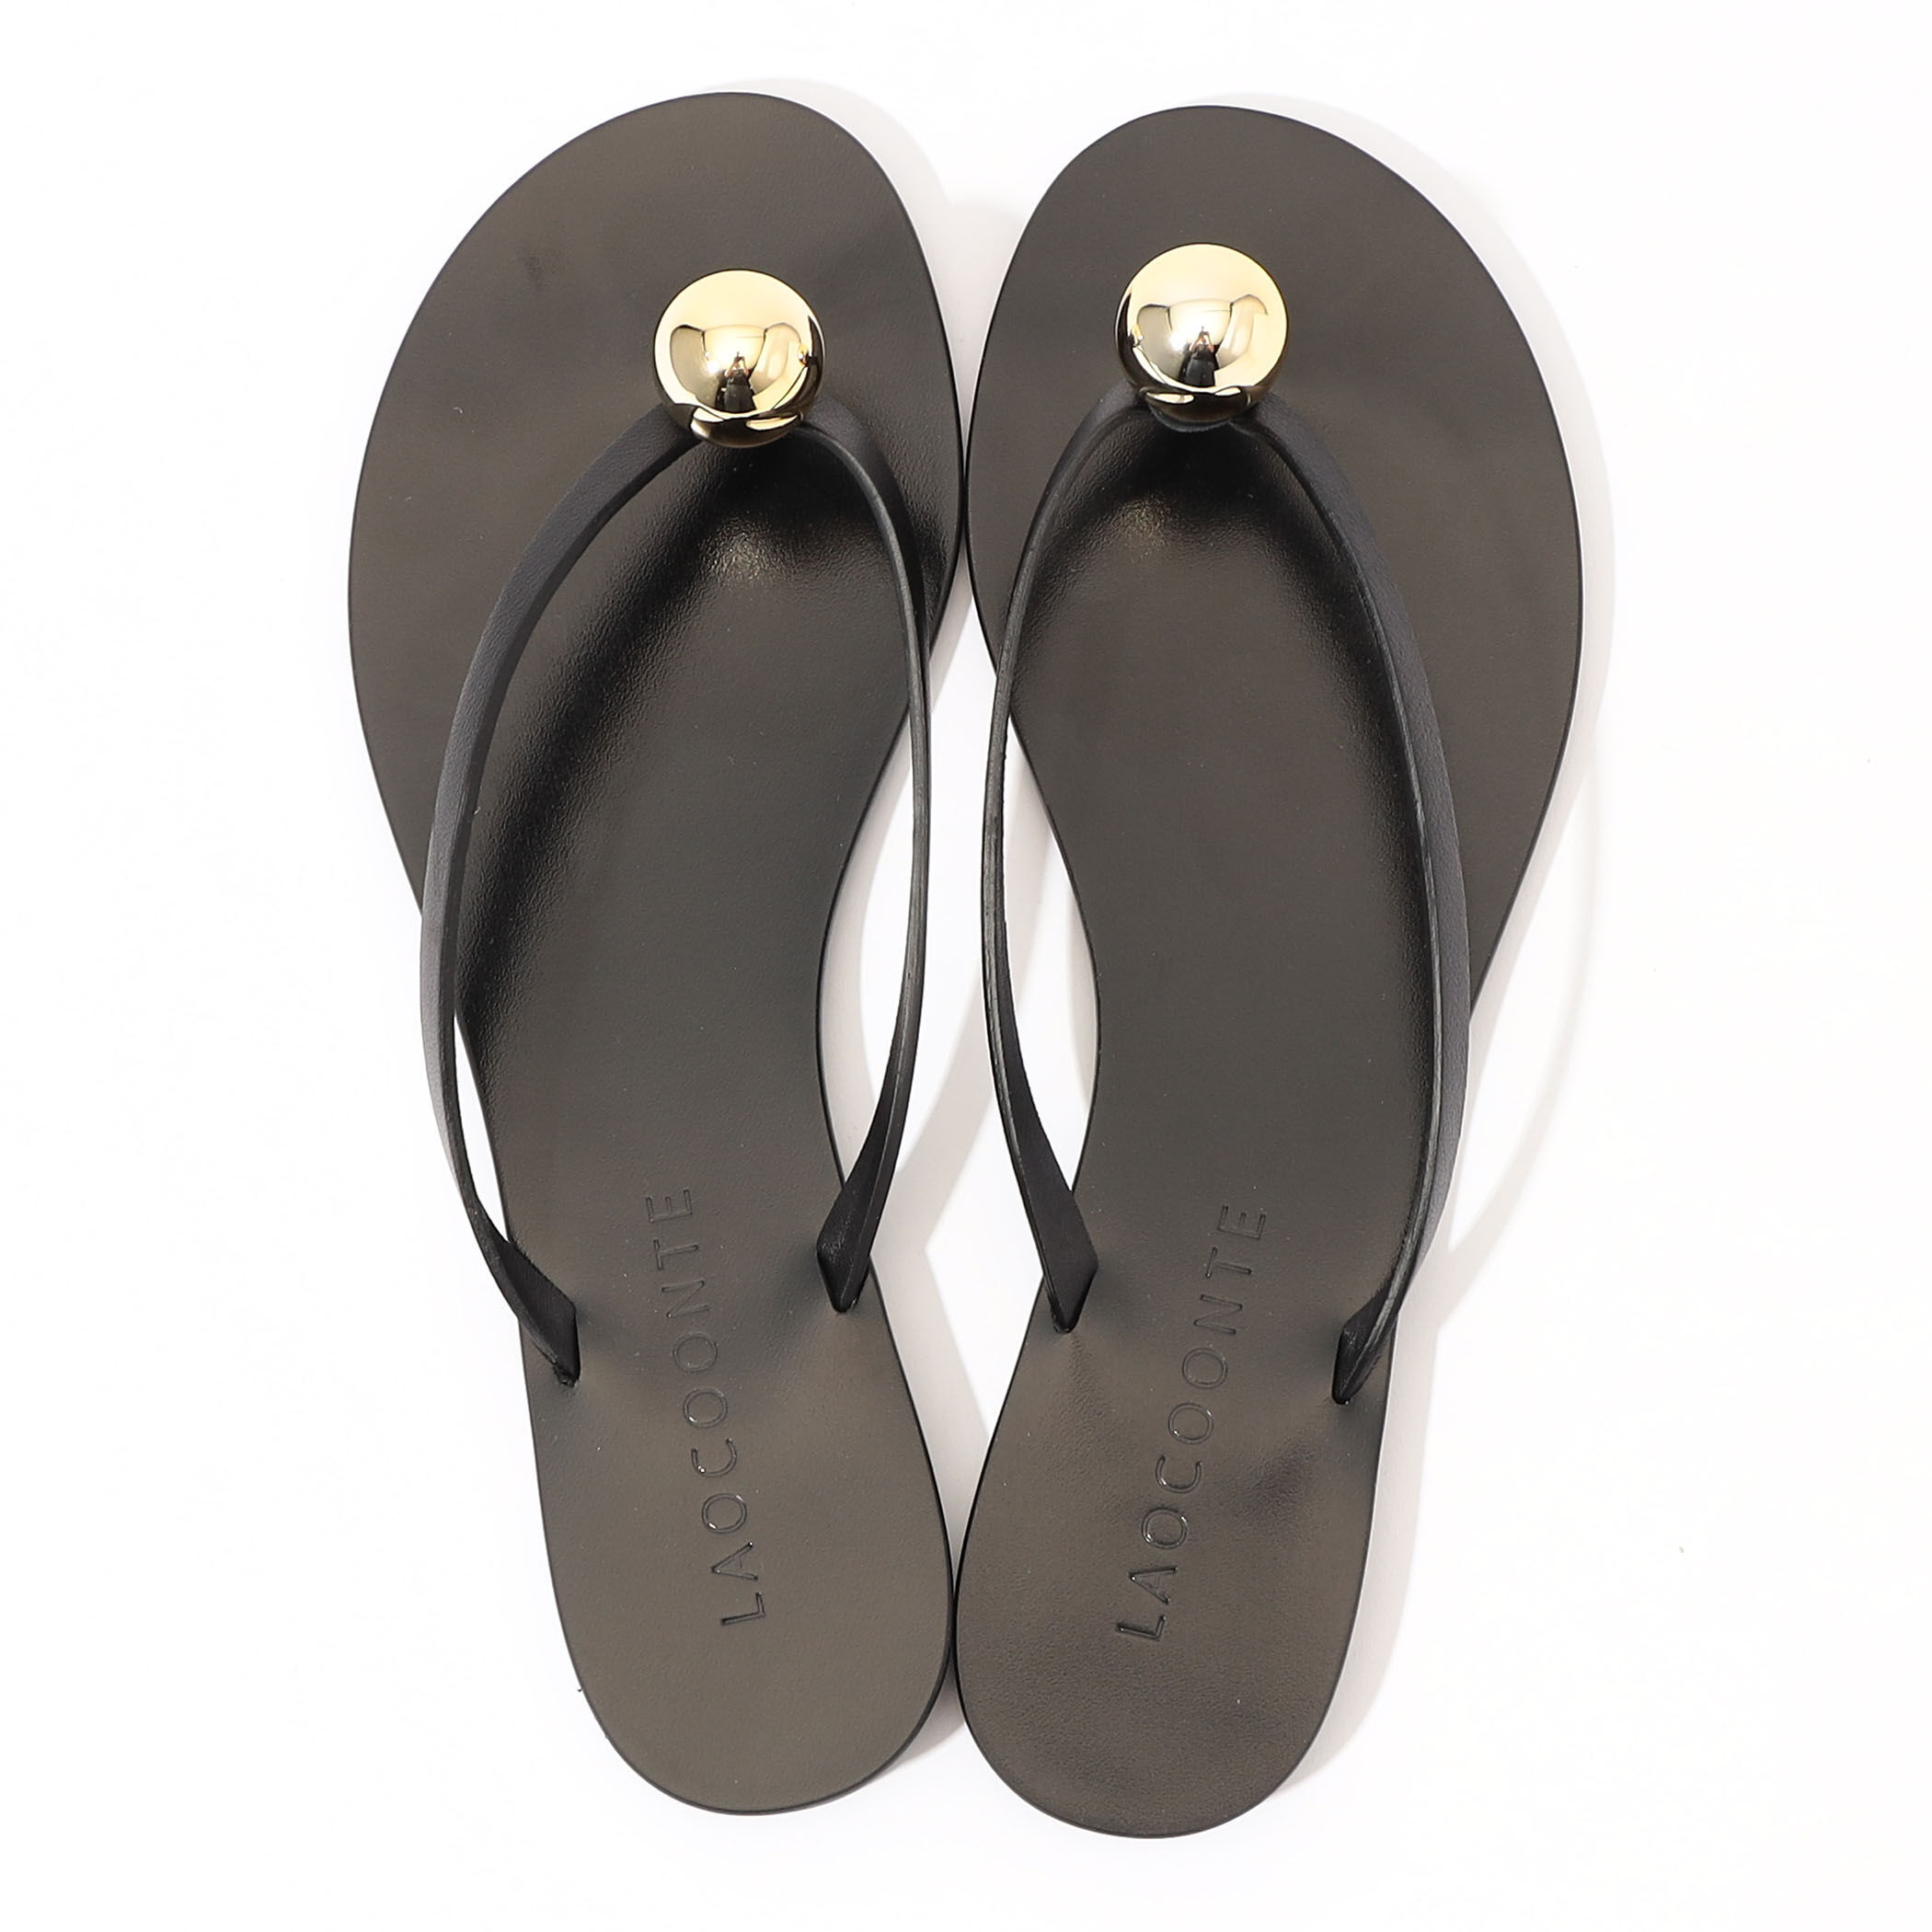 新品本物保証tg121様専用️ Noble LAOCOONTE リングトゥ サンダル 靴